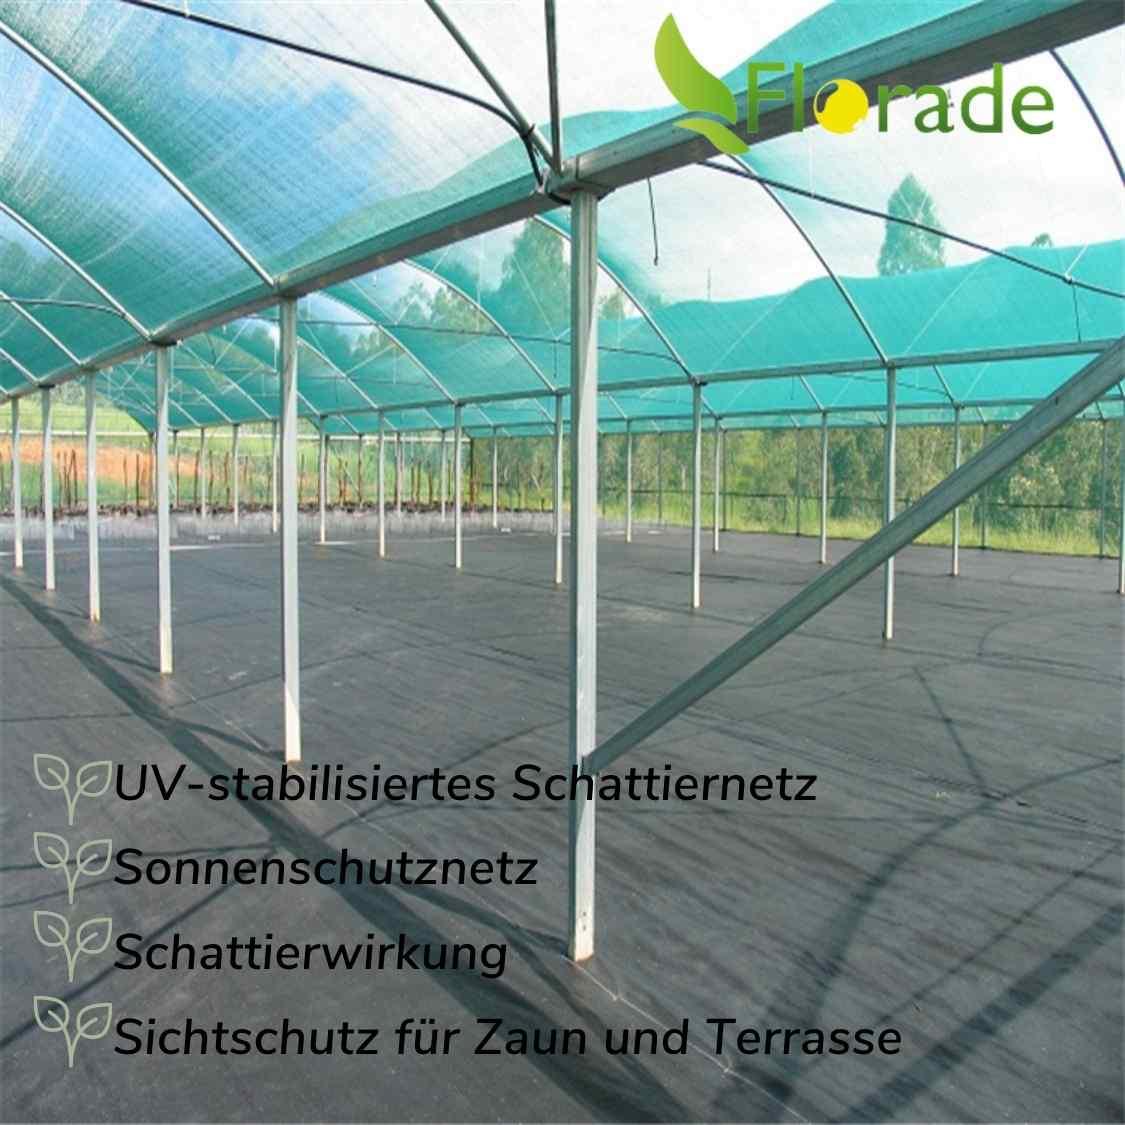 Florade - Schattiernetz - Schattennetz - Sonnenschutzabdeckung - Florade.de 